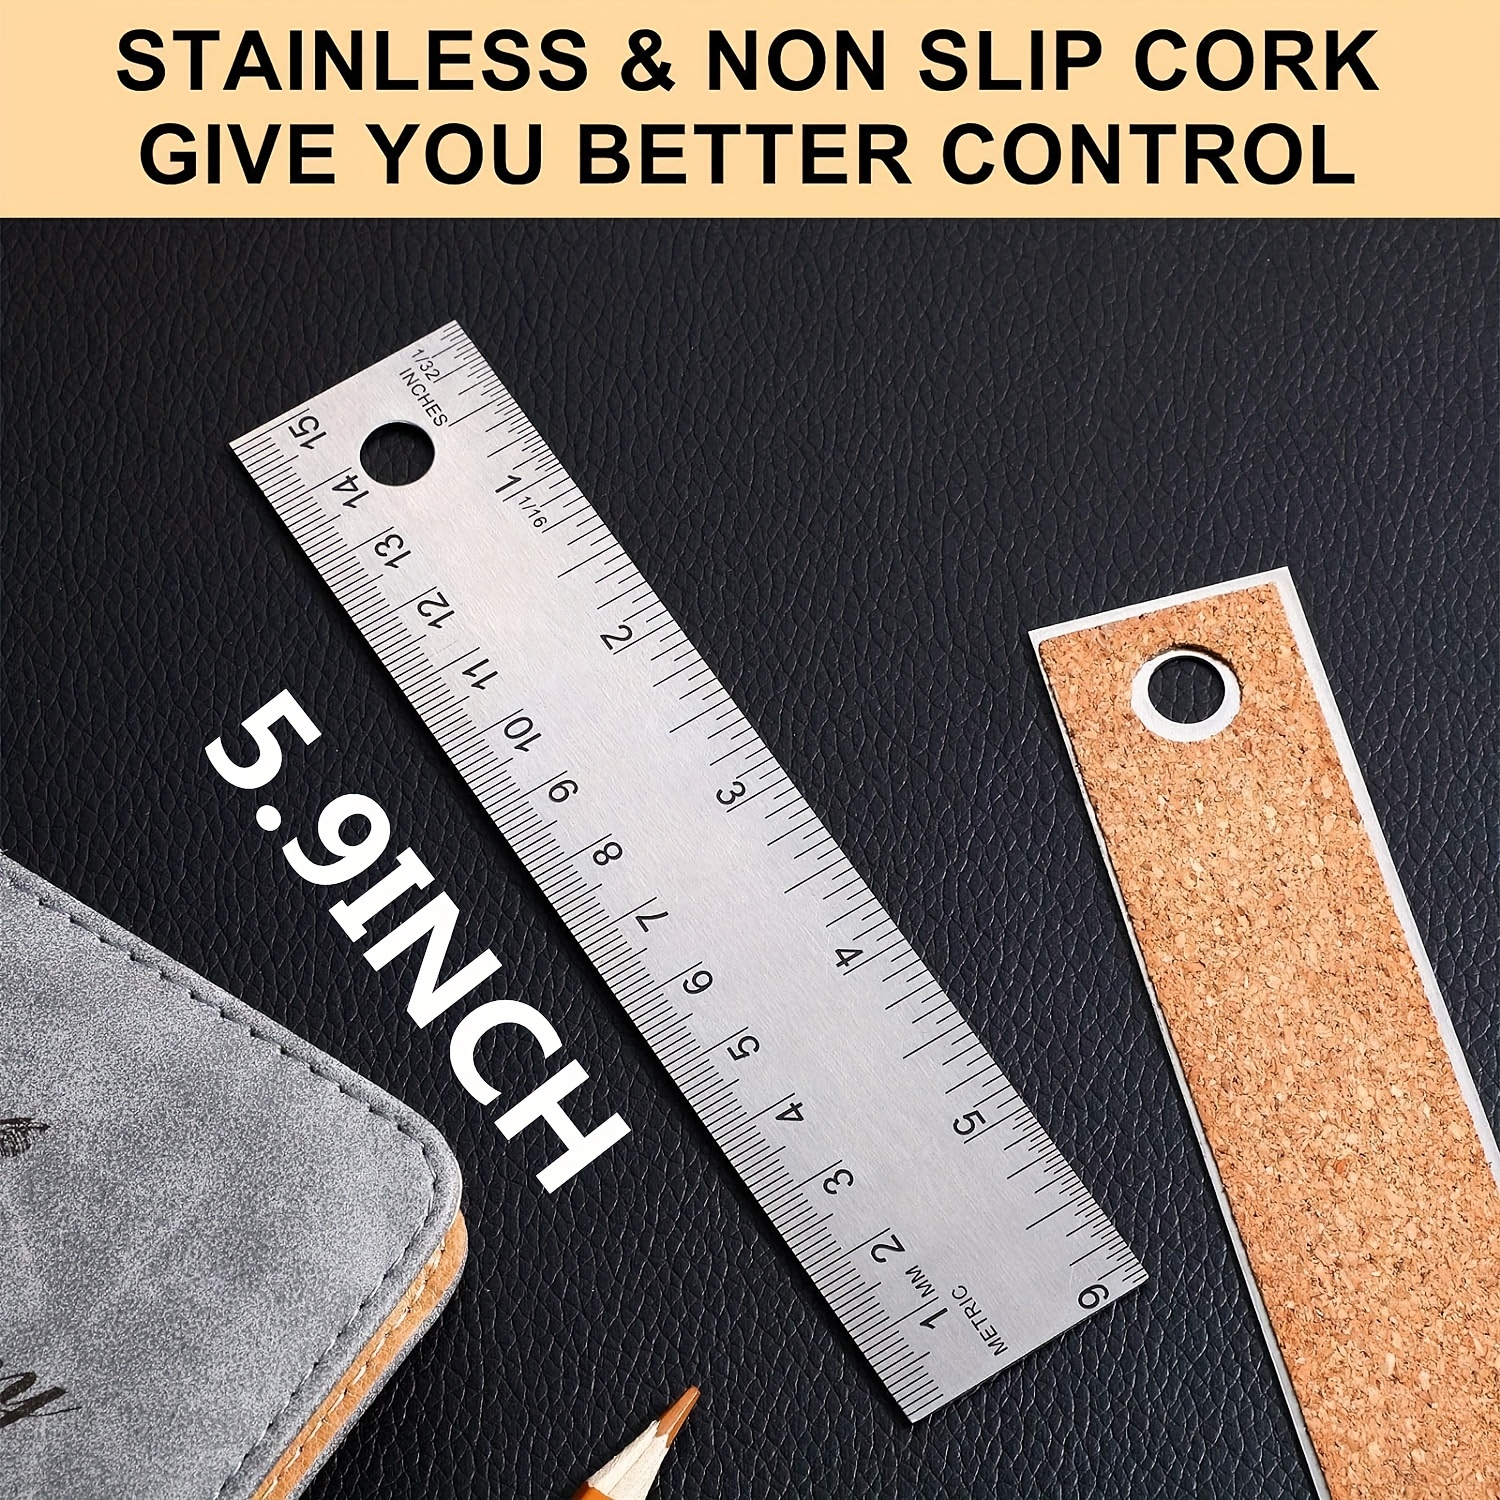 2 Pack Stainless Steel 12 Inch Metal Ruler Non-Slip Cork Back